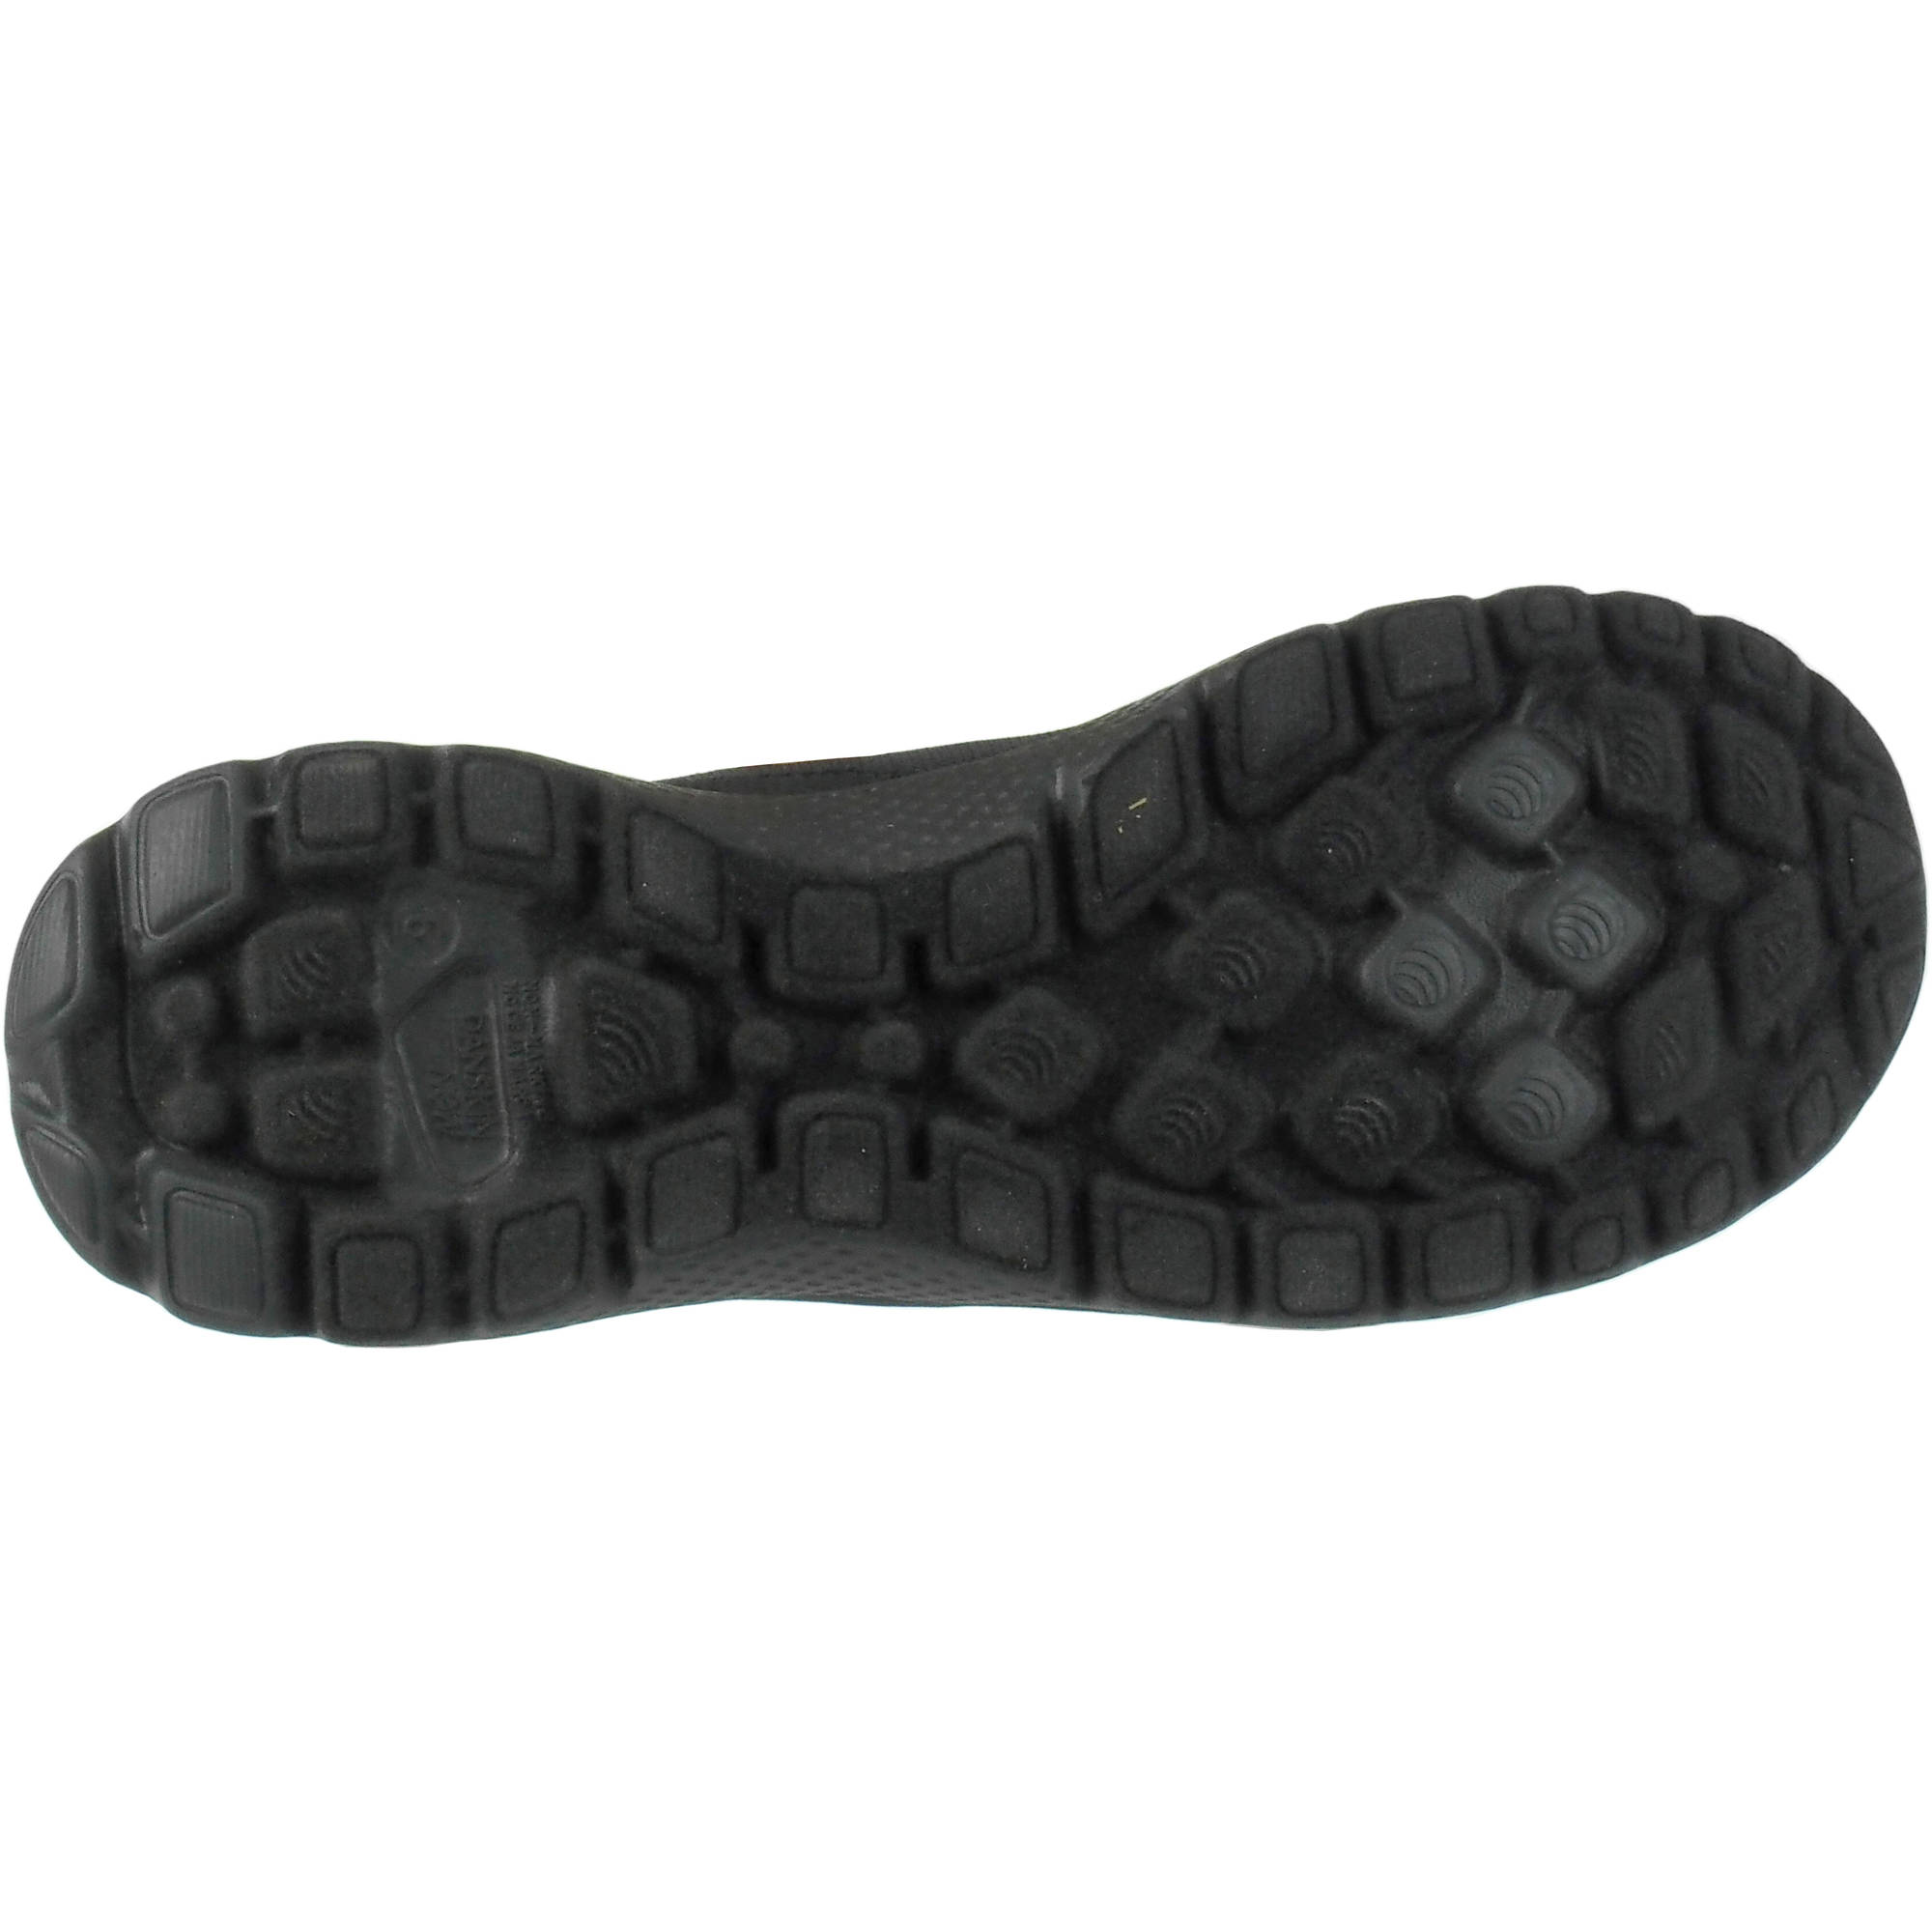 Danskin Now Women's Memory Foam Slip-on Athletic Shoe - image 2 of 5